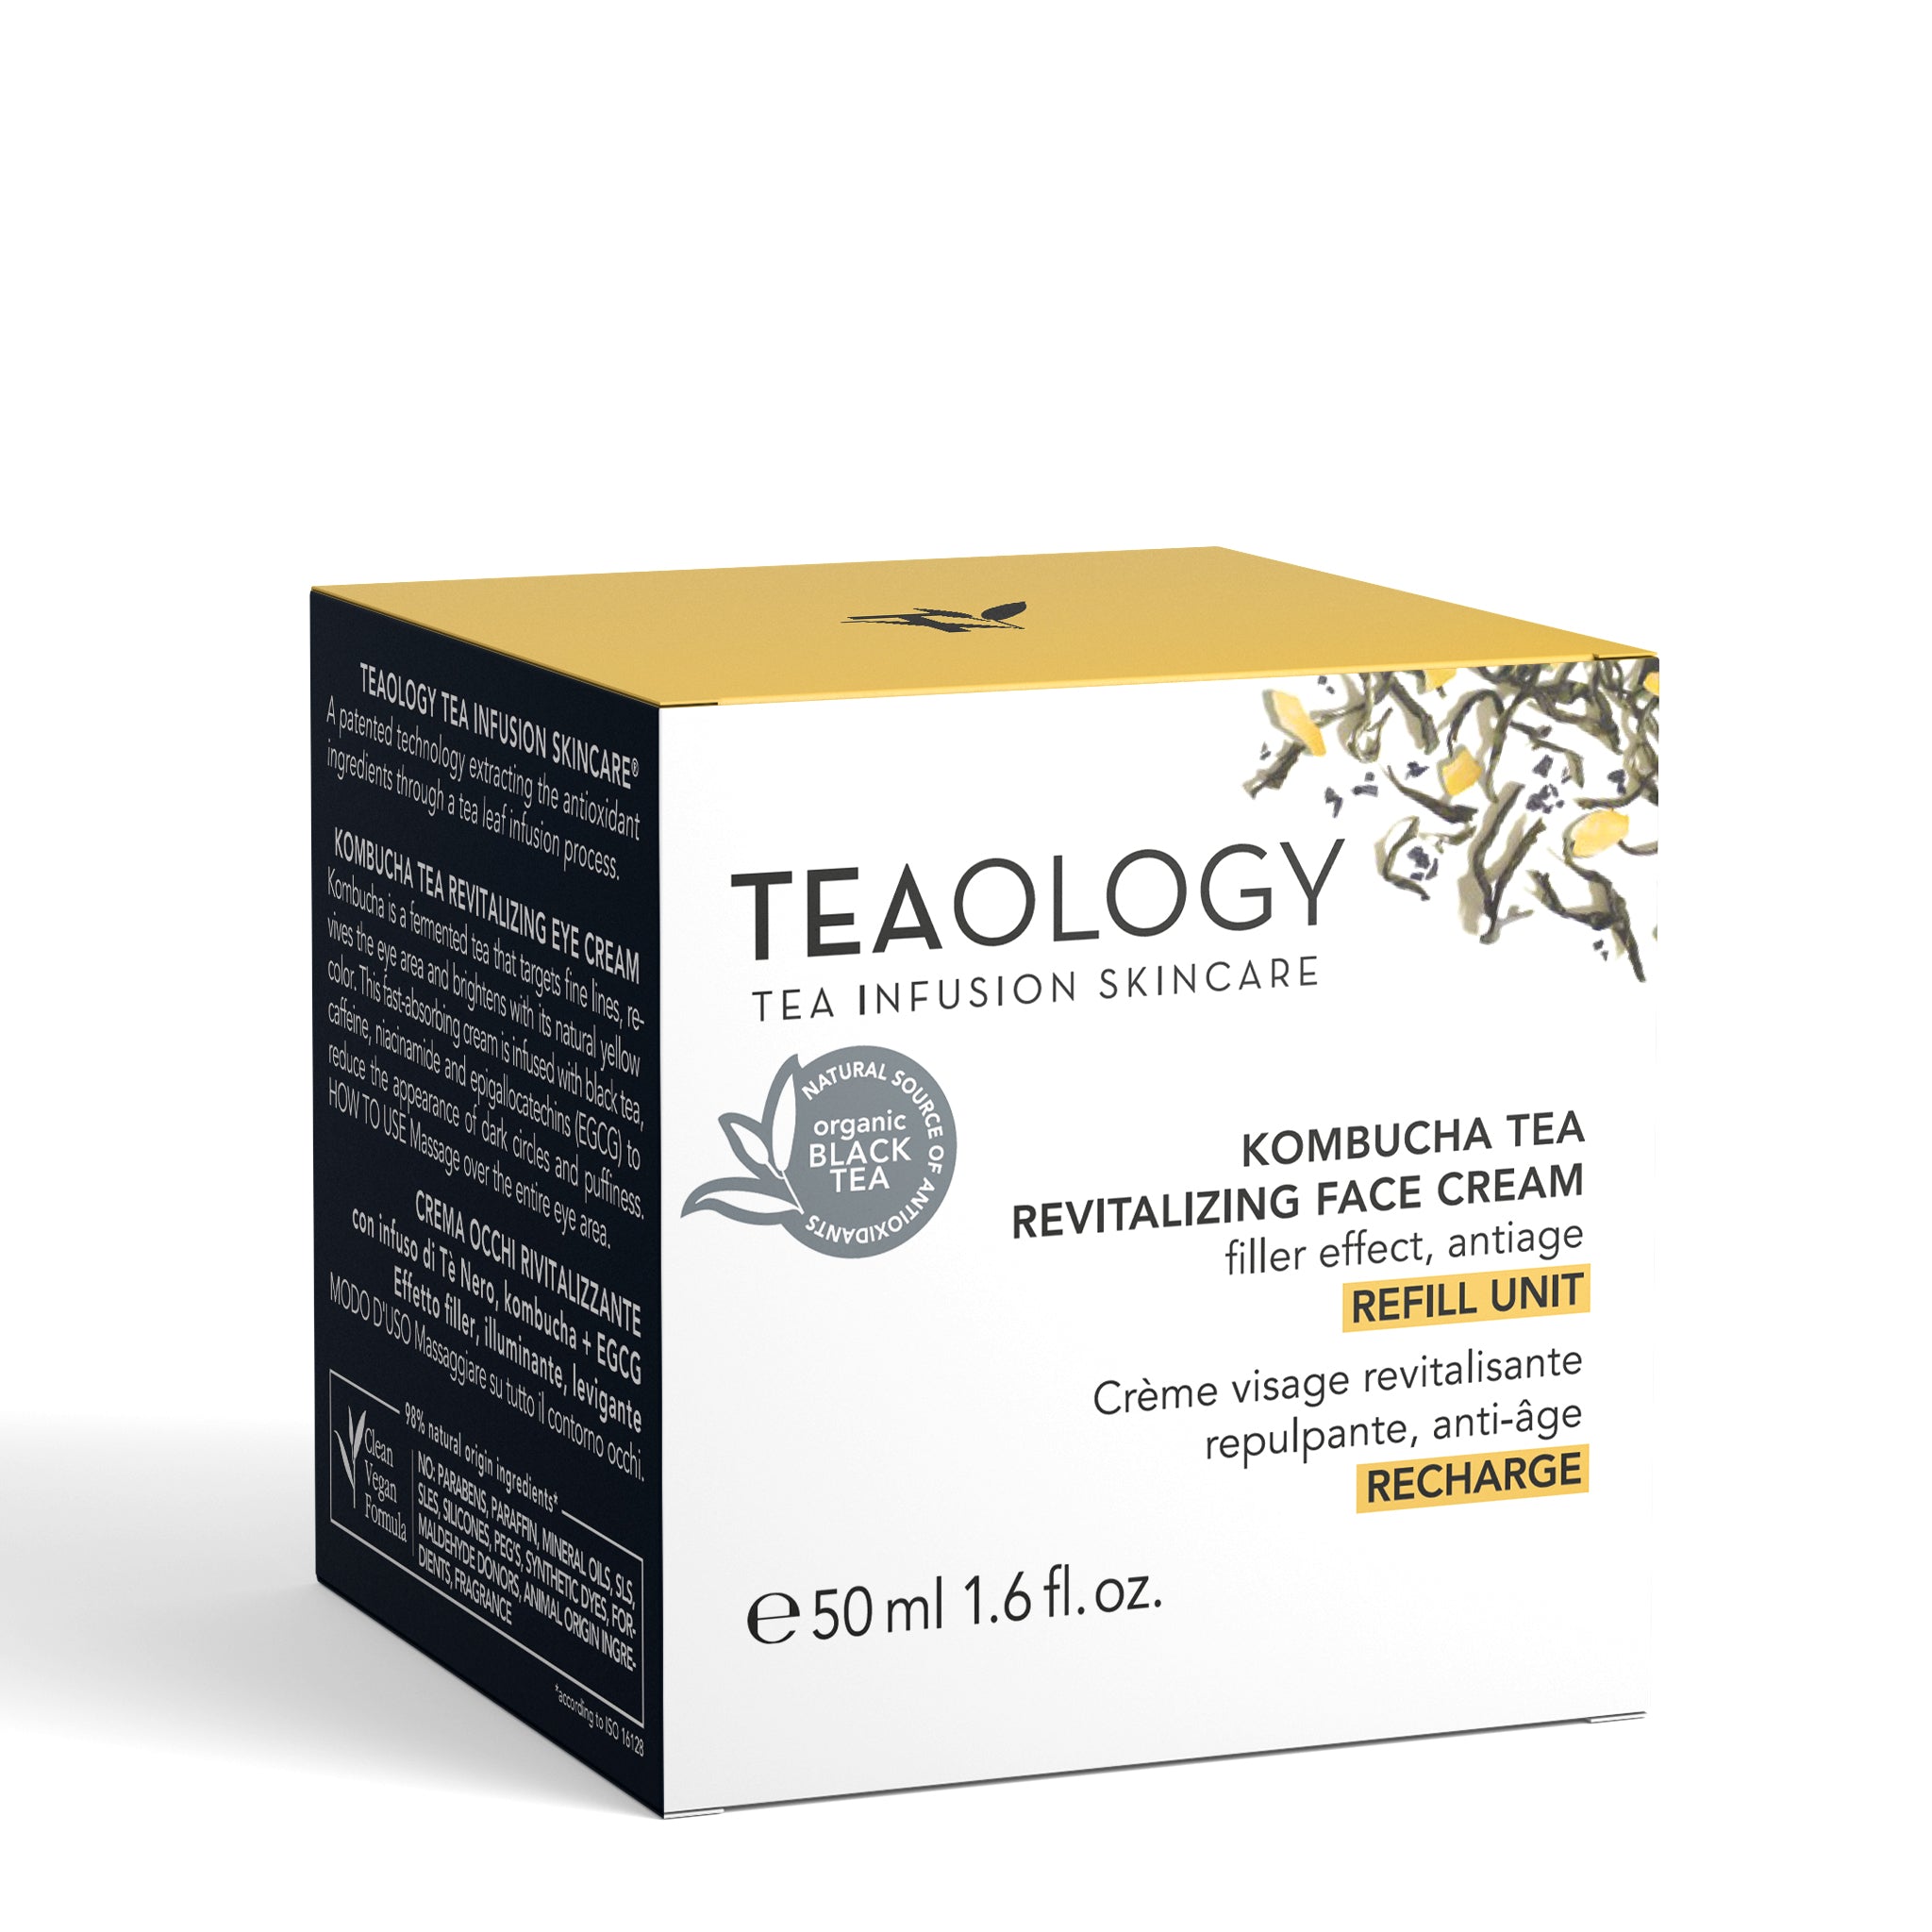 Refill - Kombucha Tea Revitalizing Face Cream